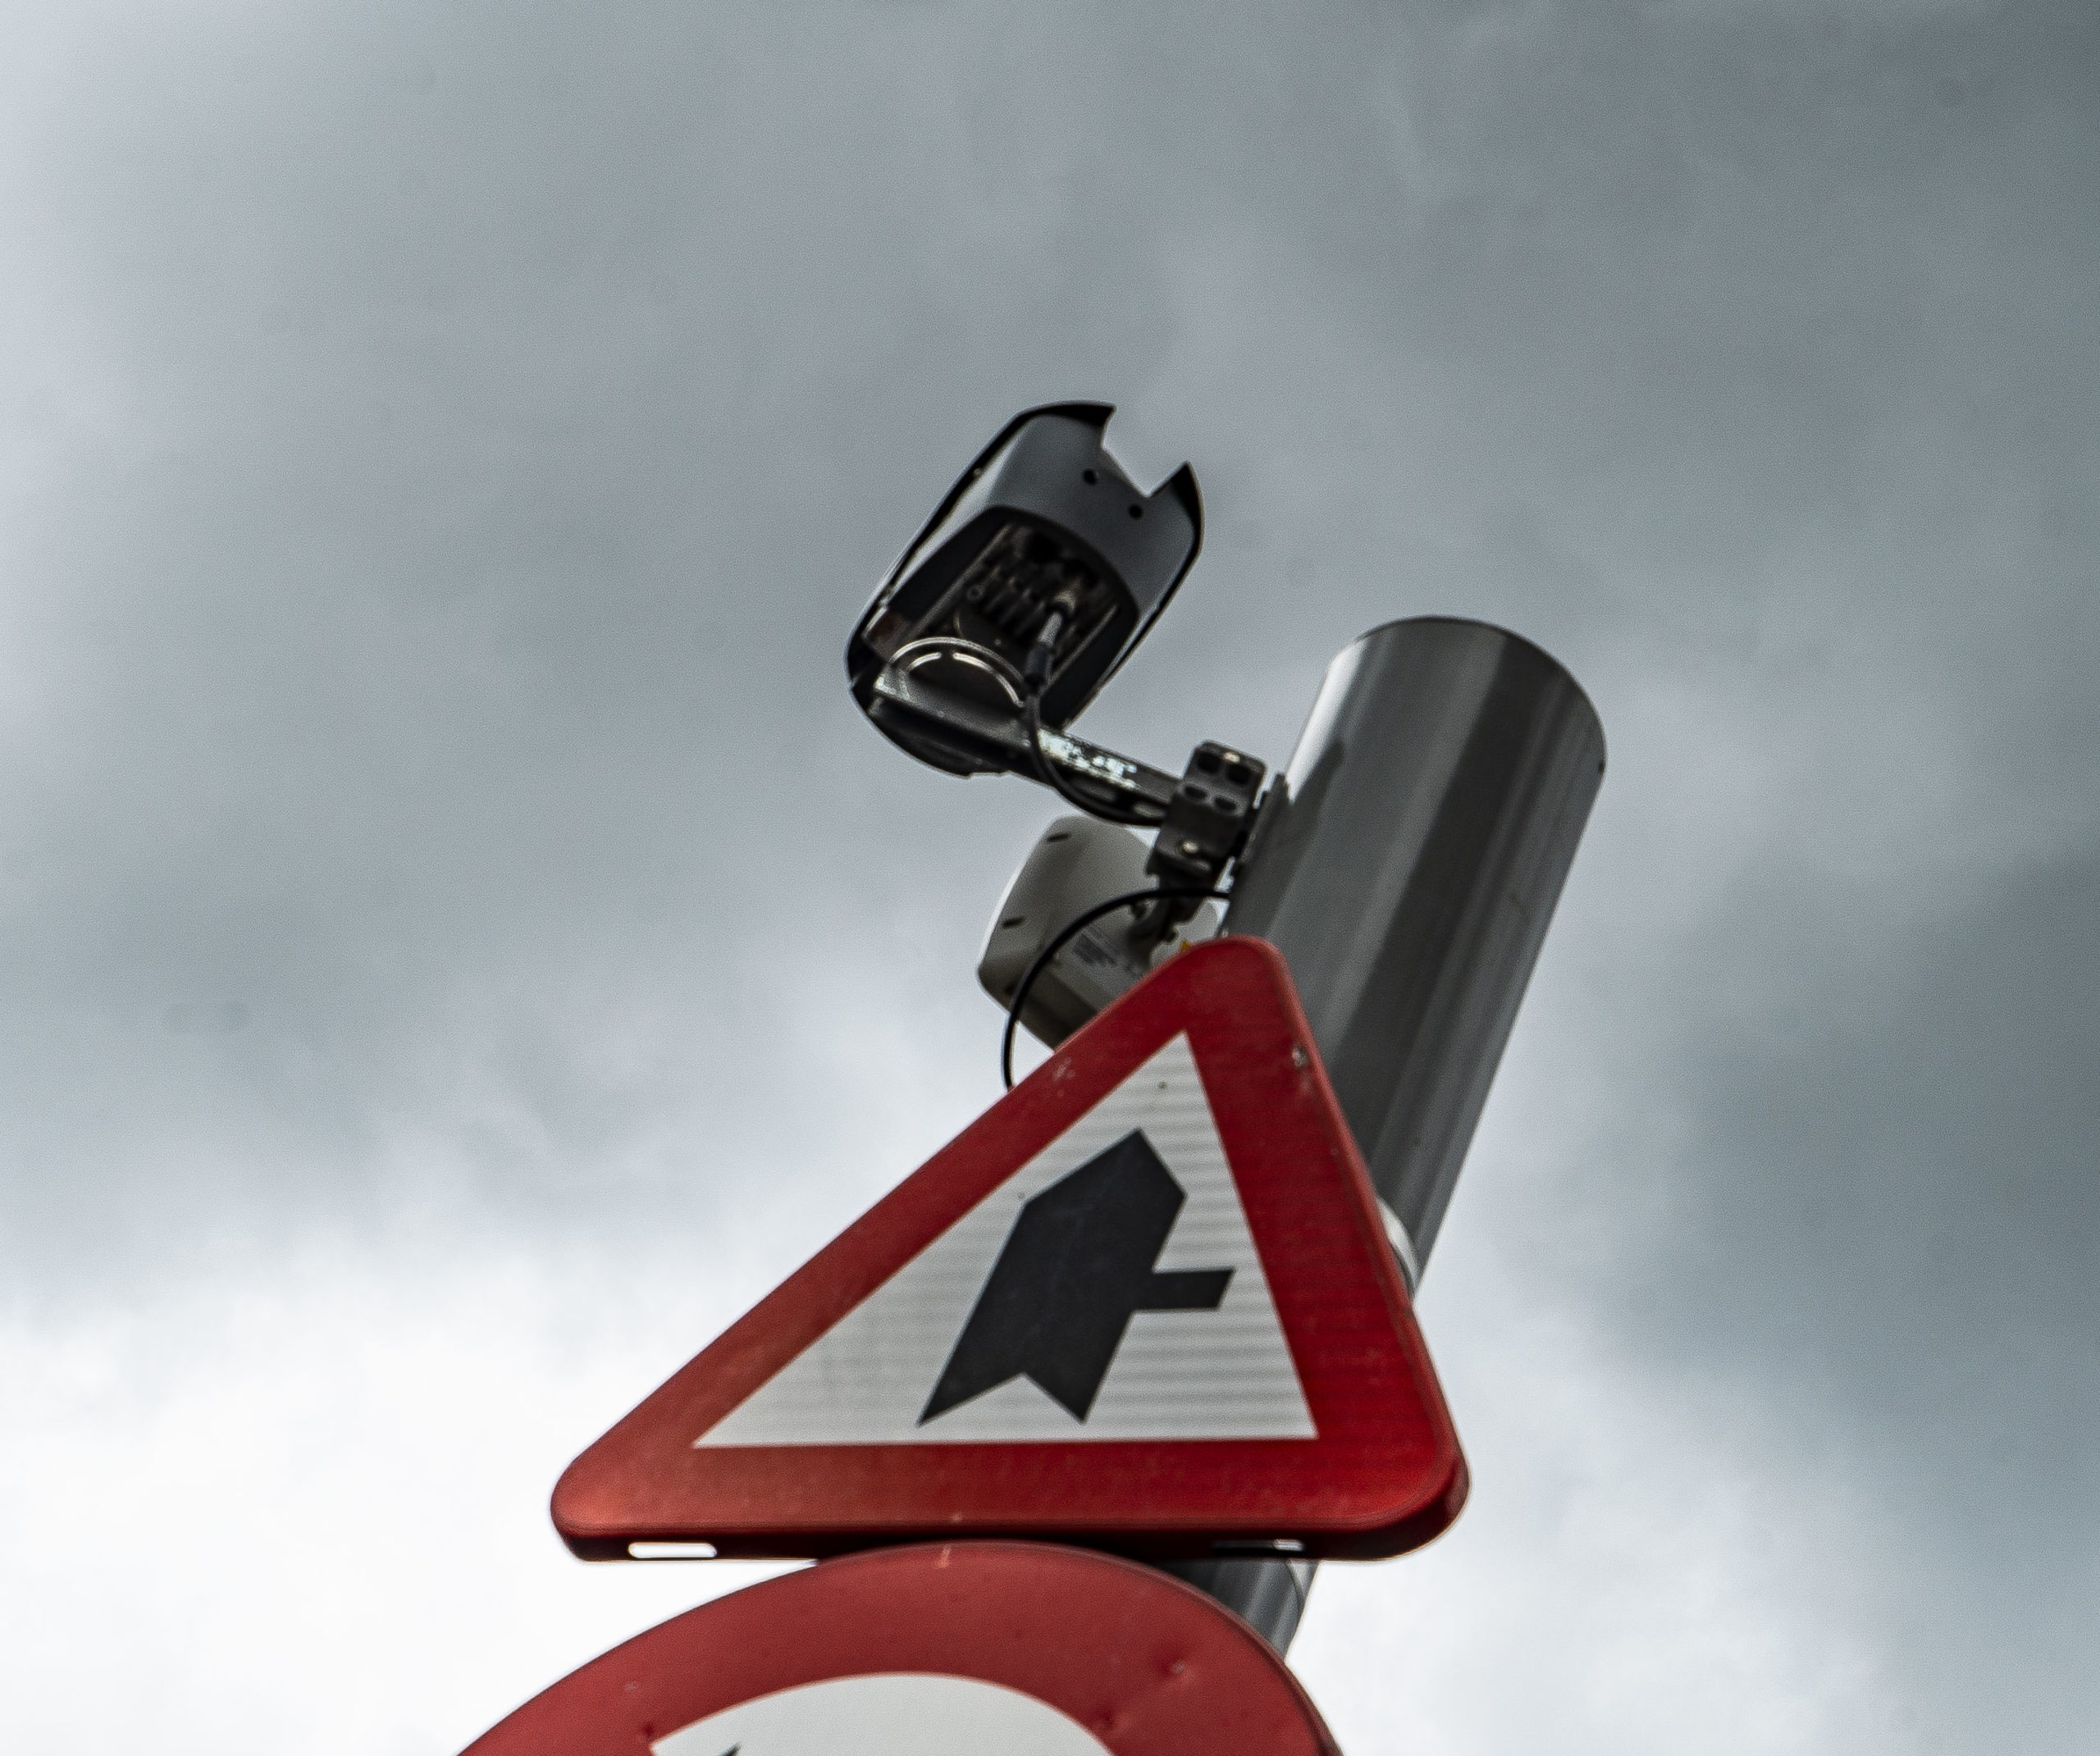 Vias: ‘ANPR cameras catch 14 motorists per hour using phone’